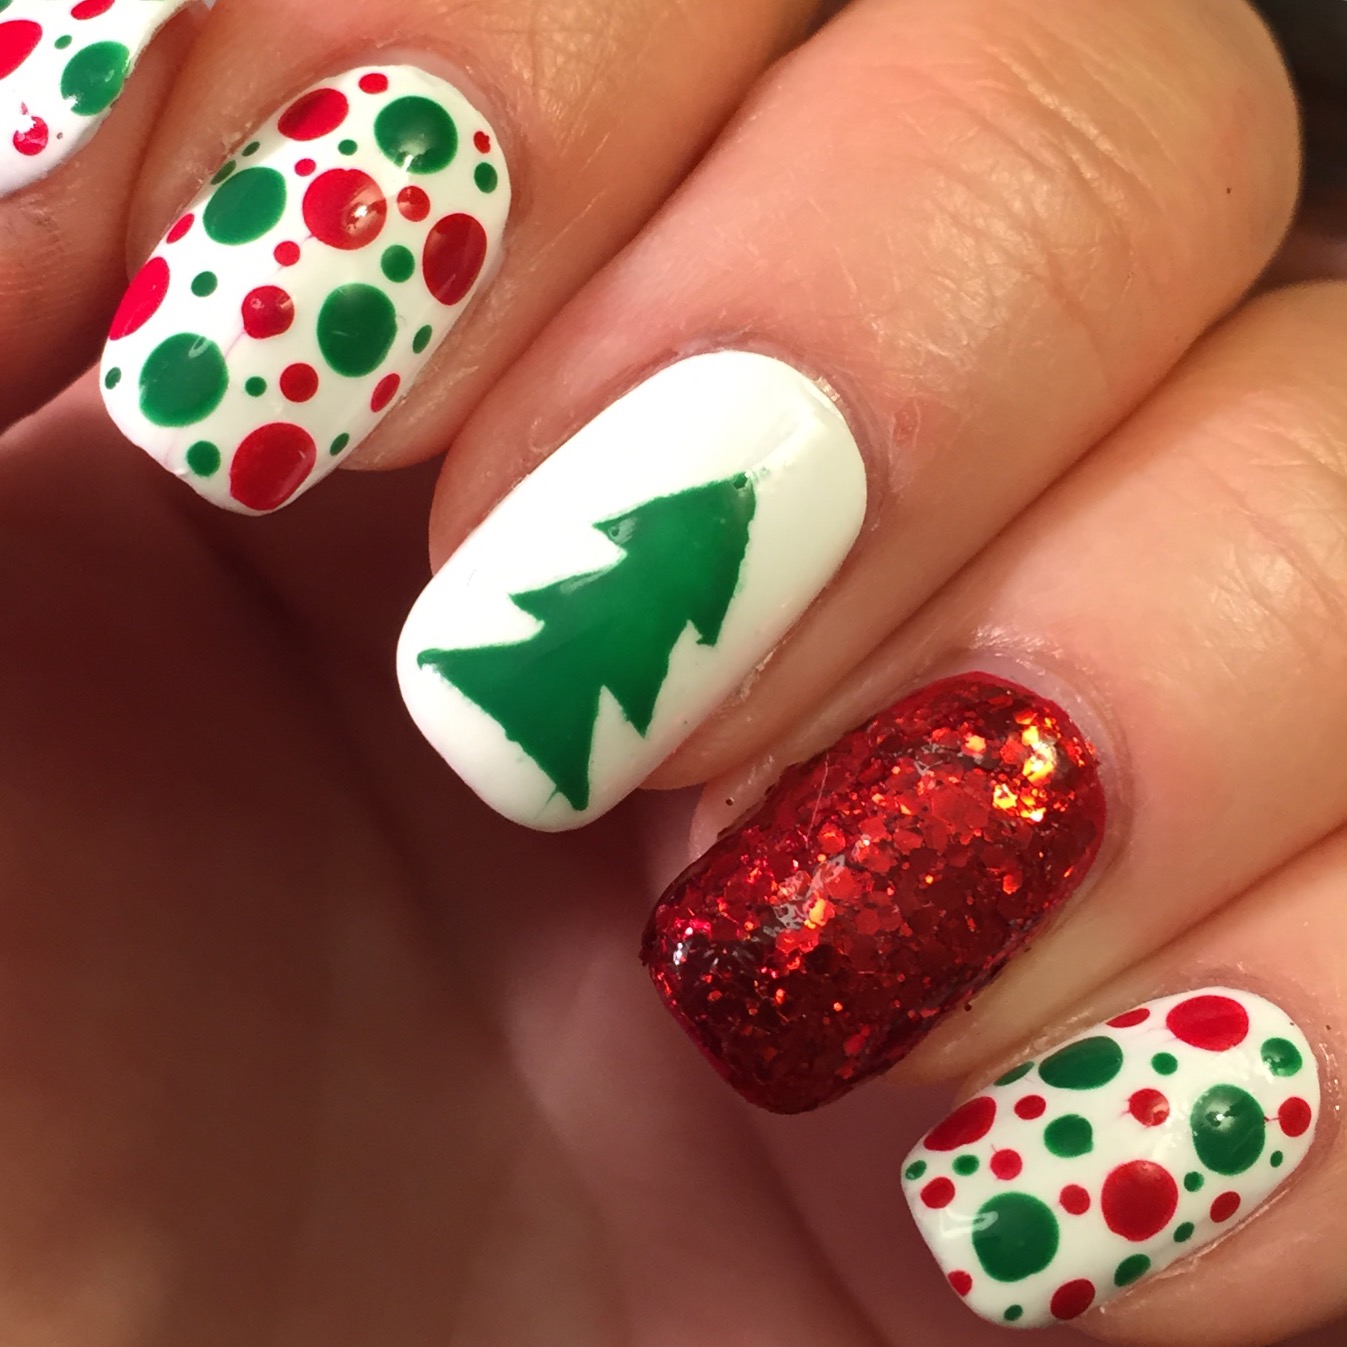 24 074 рез. по запросу «Christmas nails» — изображения, стоковые  фотографии, трехмерные объекты и векторная графика | Shutterstock